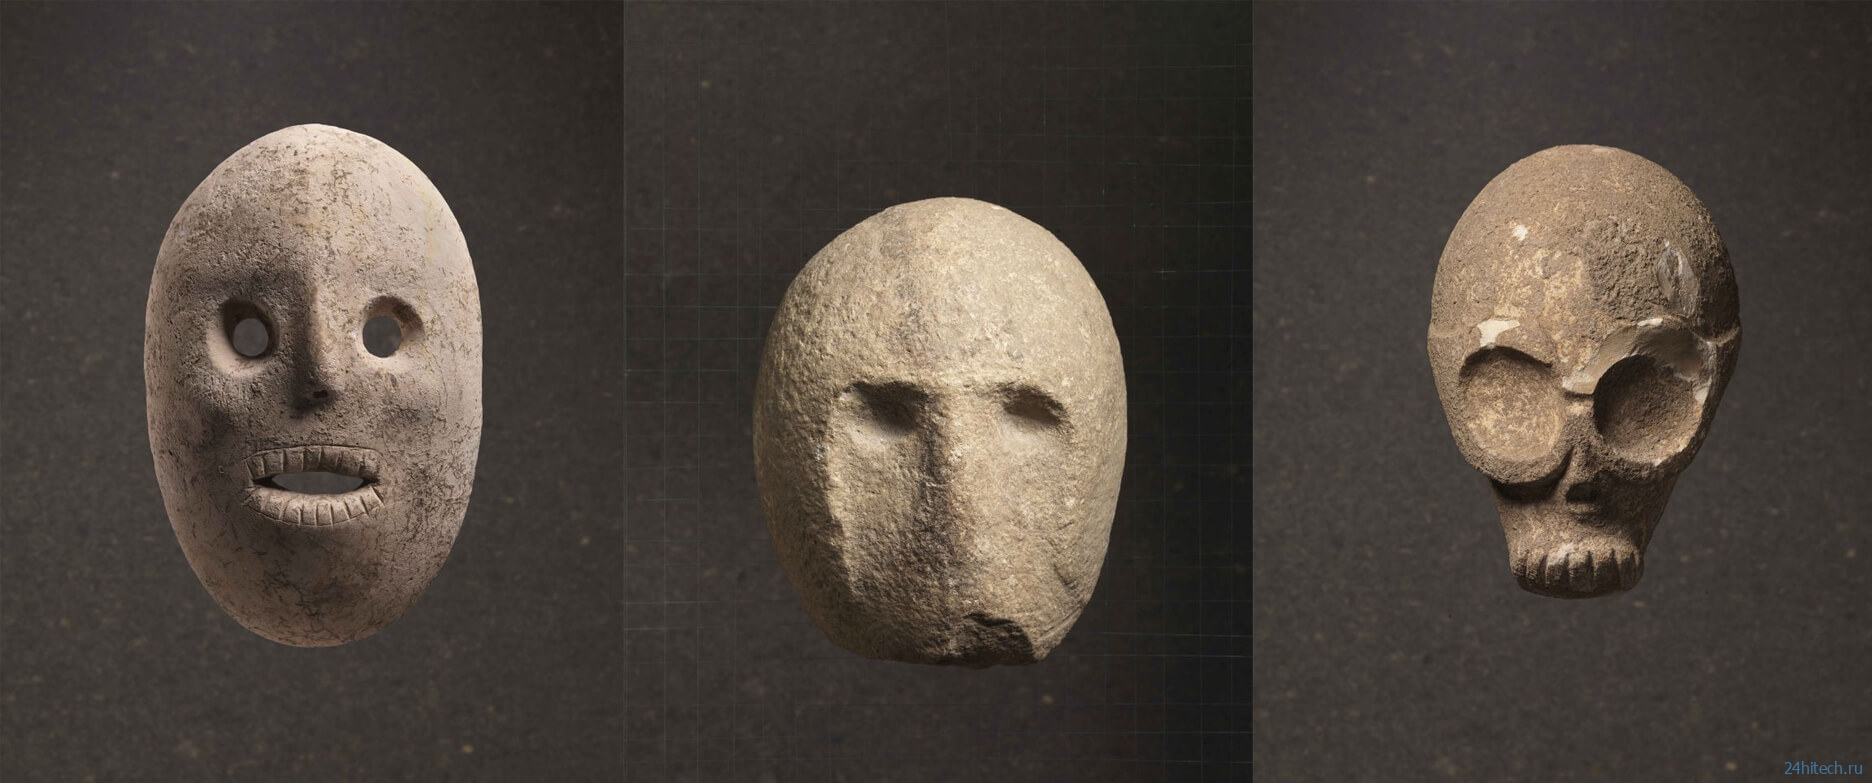 Как выглядели самые первые маски в истории? 